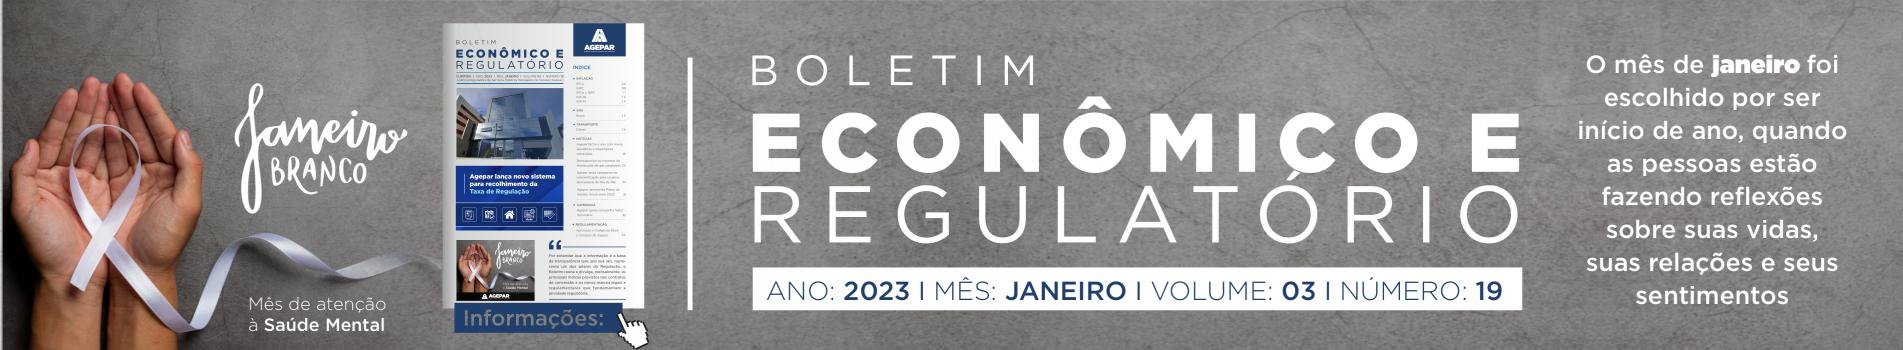 Boletim Econômico e Regulatório - Número 19 2023